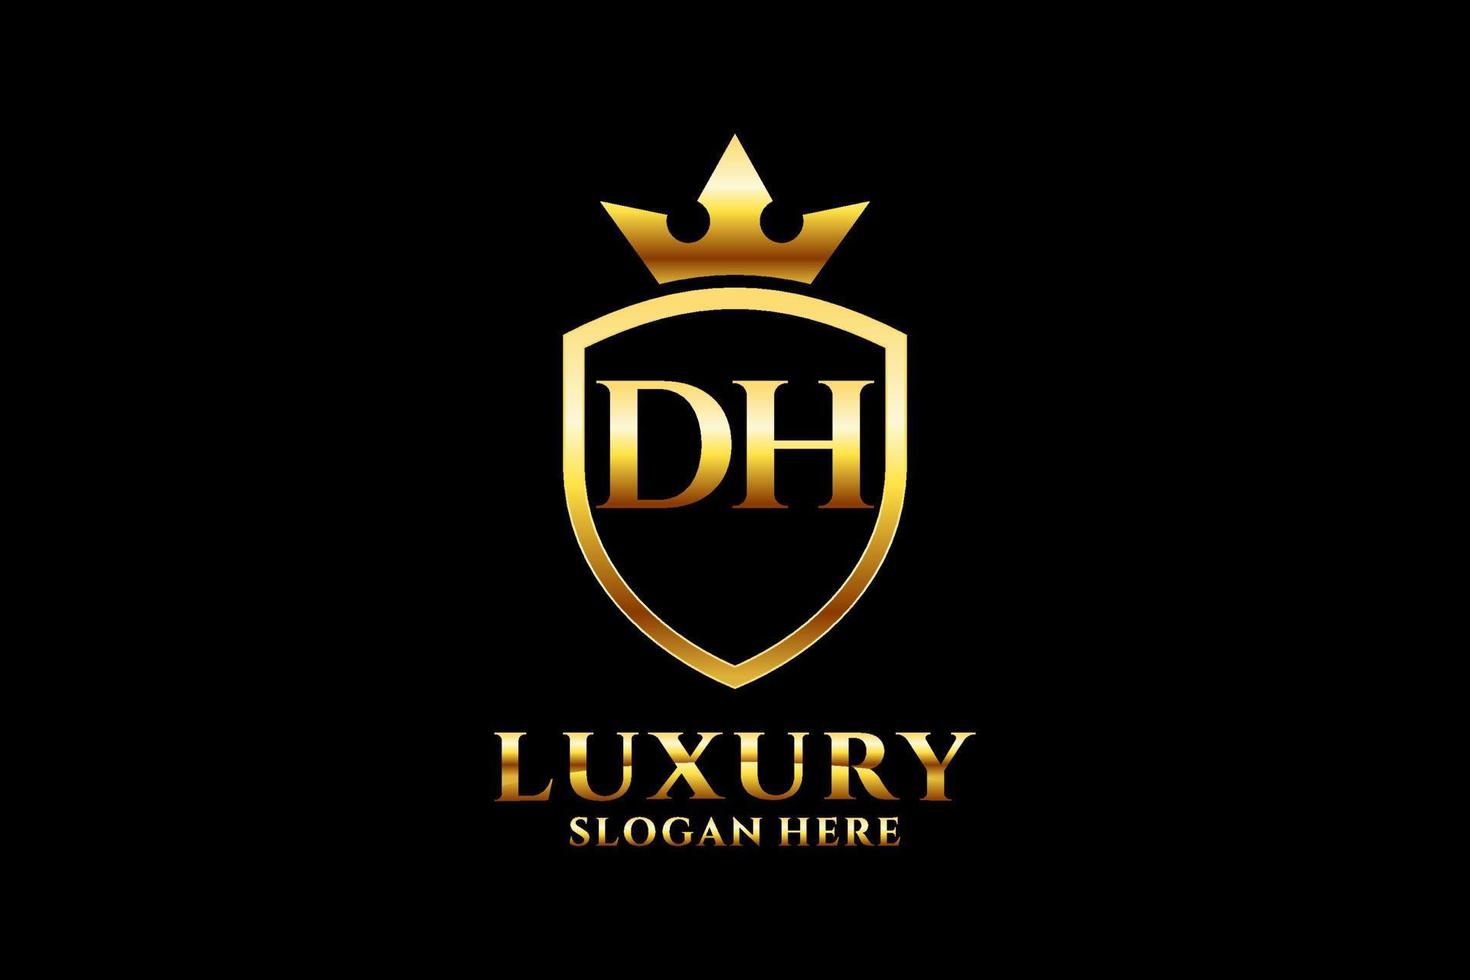 logotipo de monograma de lujo inicial dh elegante o plantilla de placa con pergaminos y corona real - perfecto para proyectos de marca de lujo vector